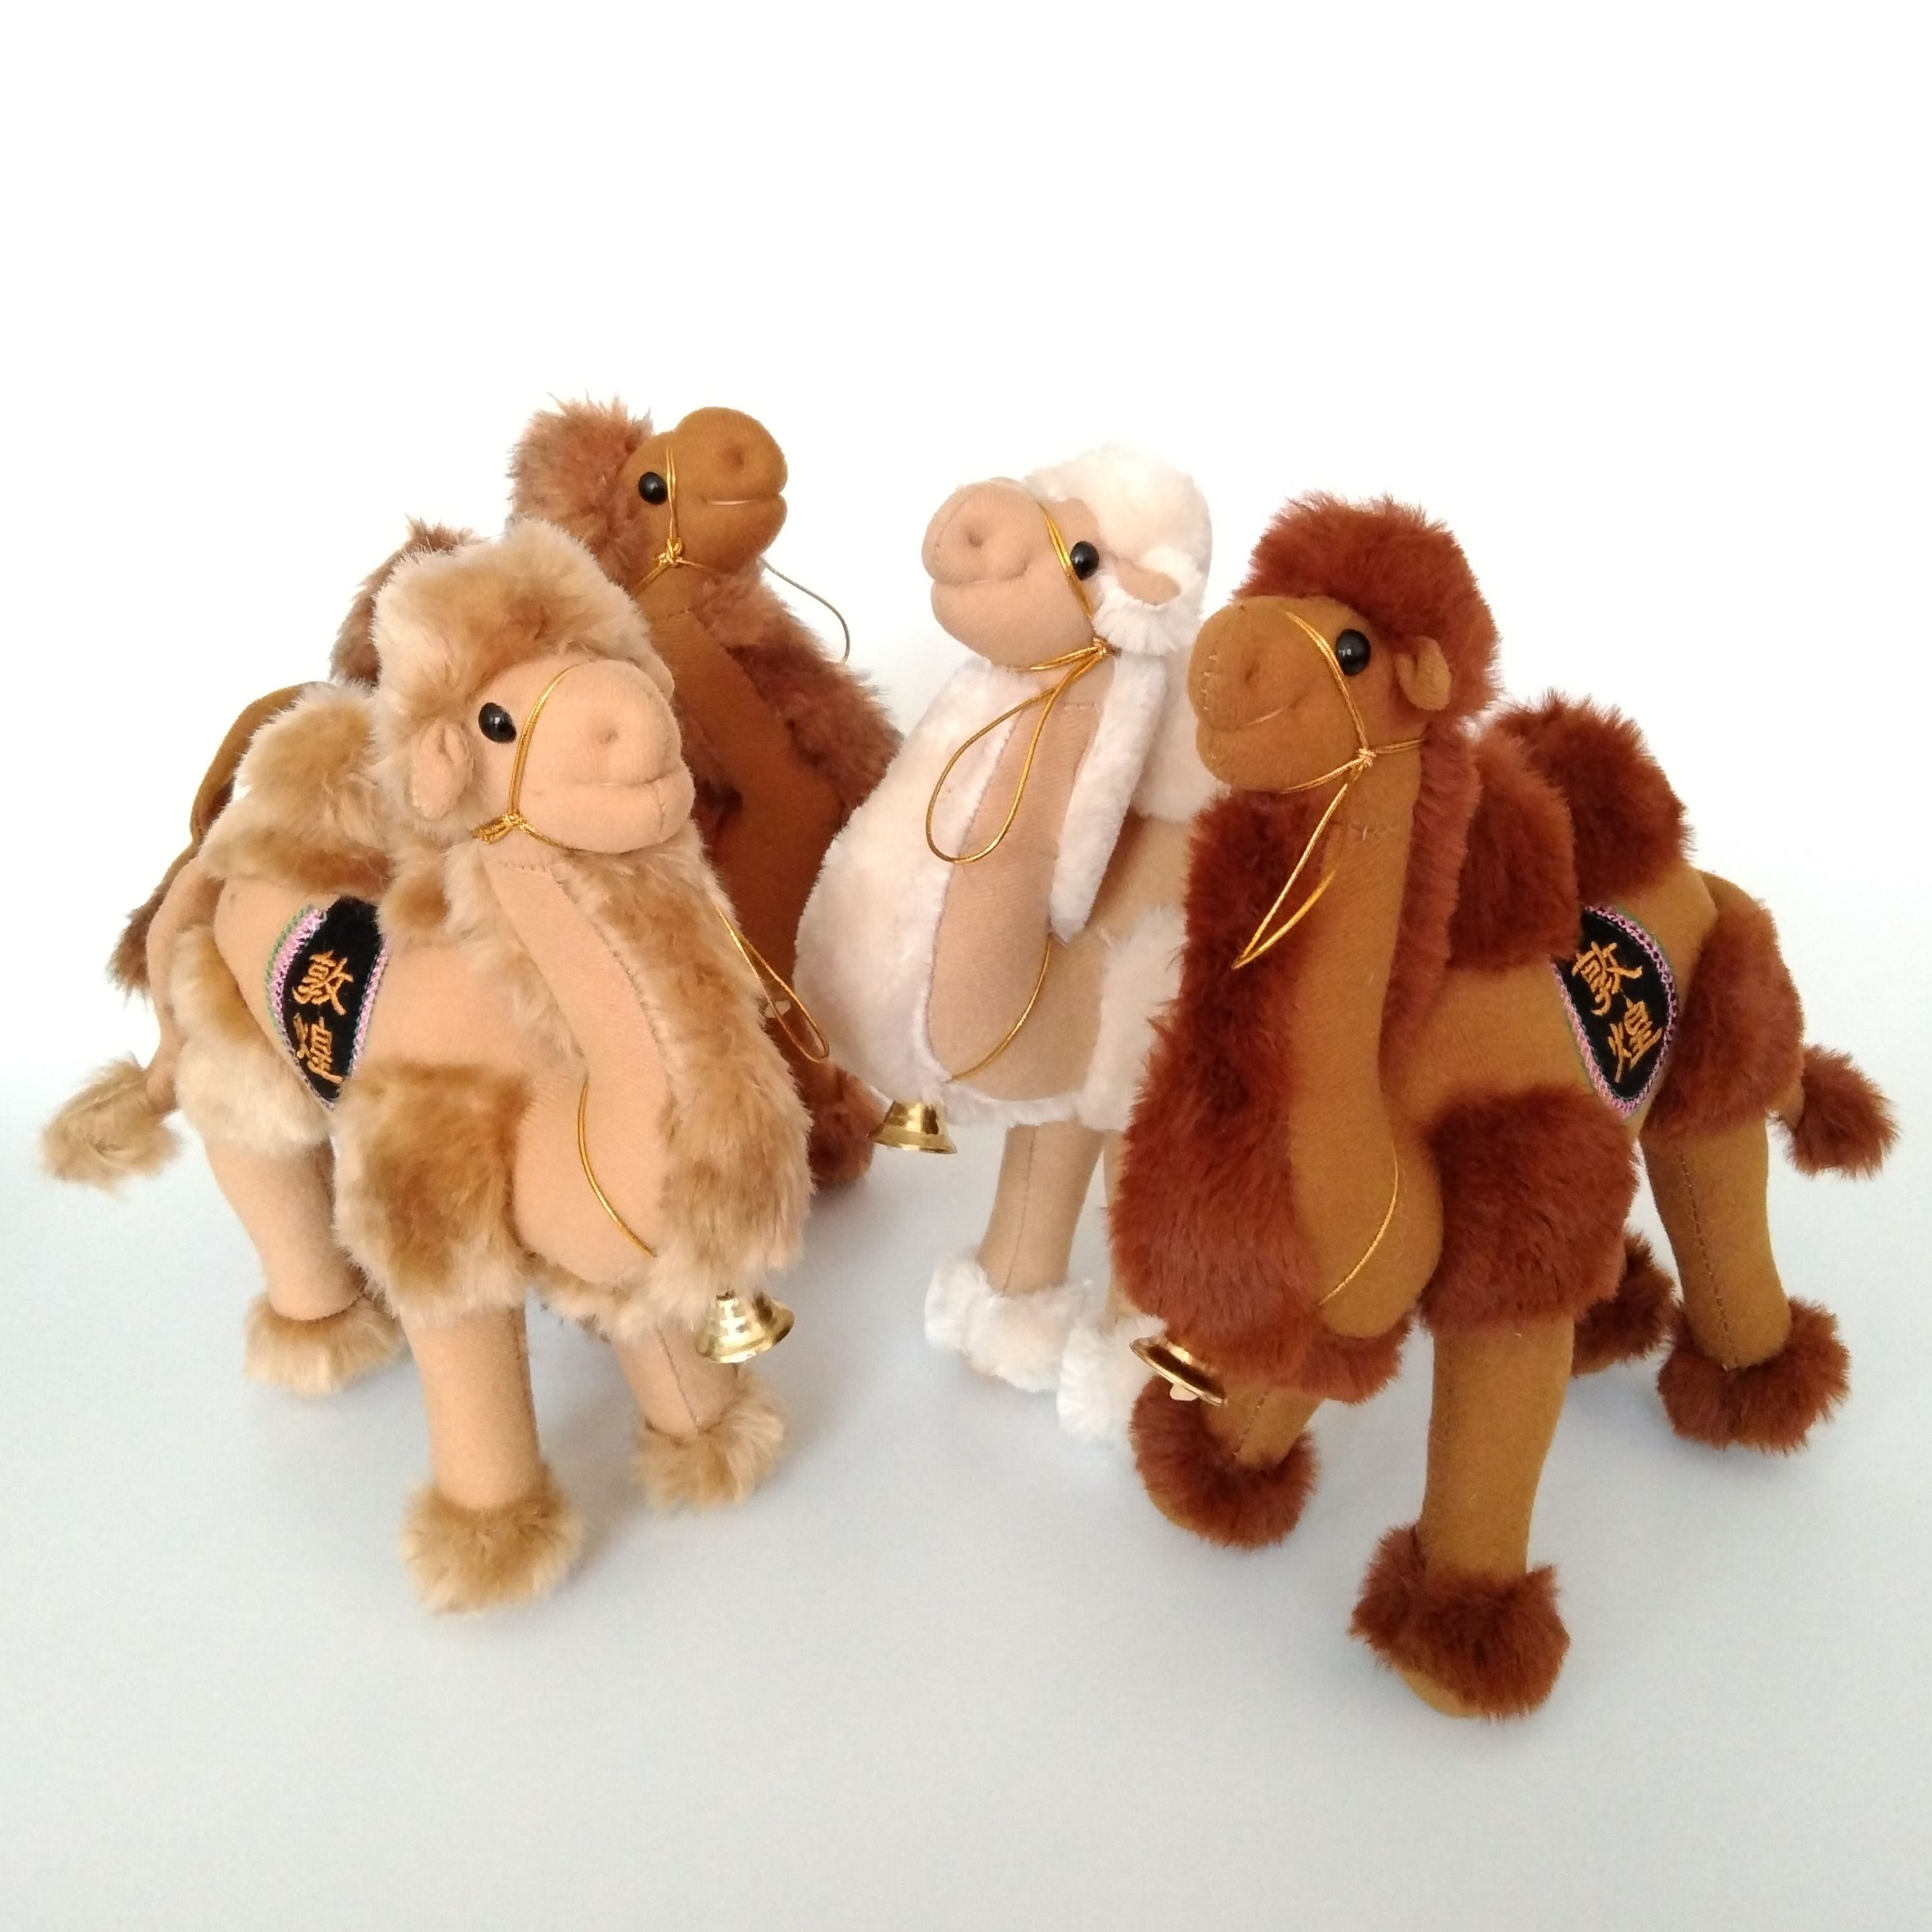 敦煌特产工艺品骆驼毛绒玩具软质站姿骆驼敦煌旅游纪念礼品包邮